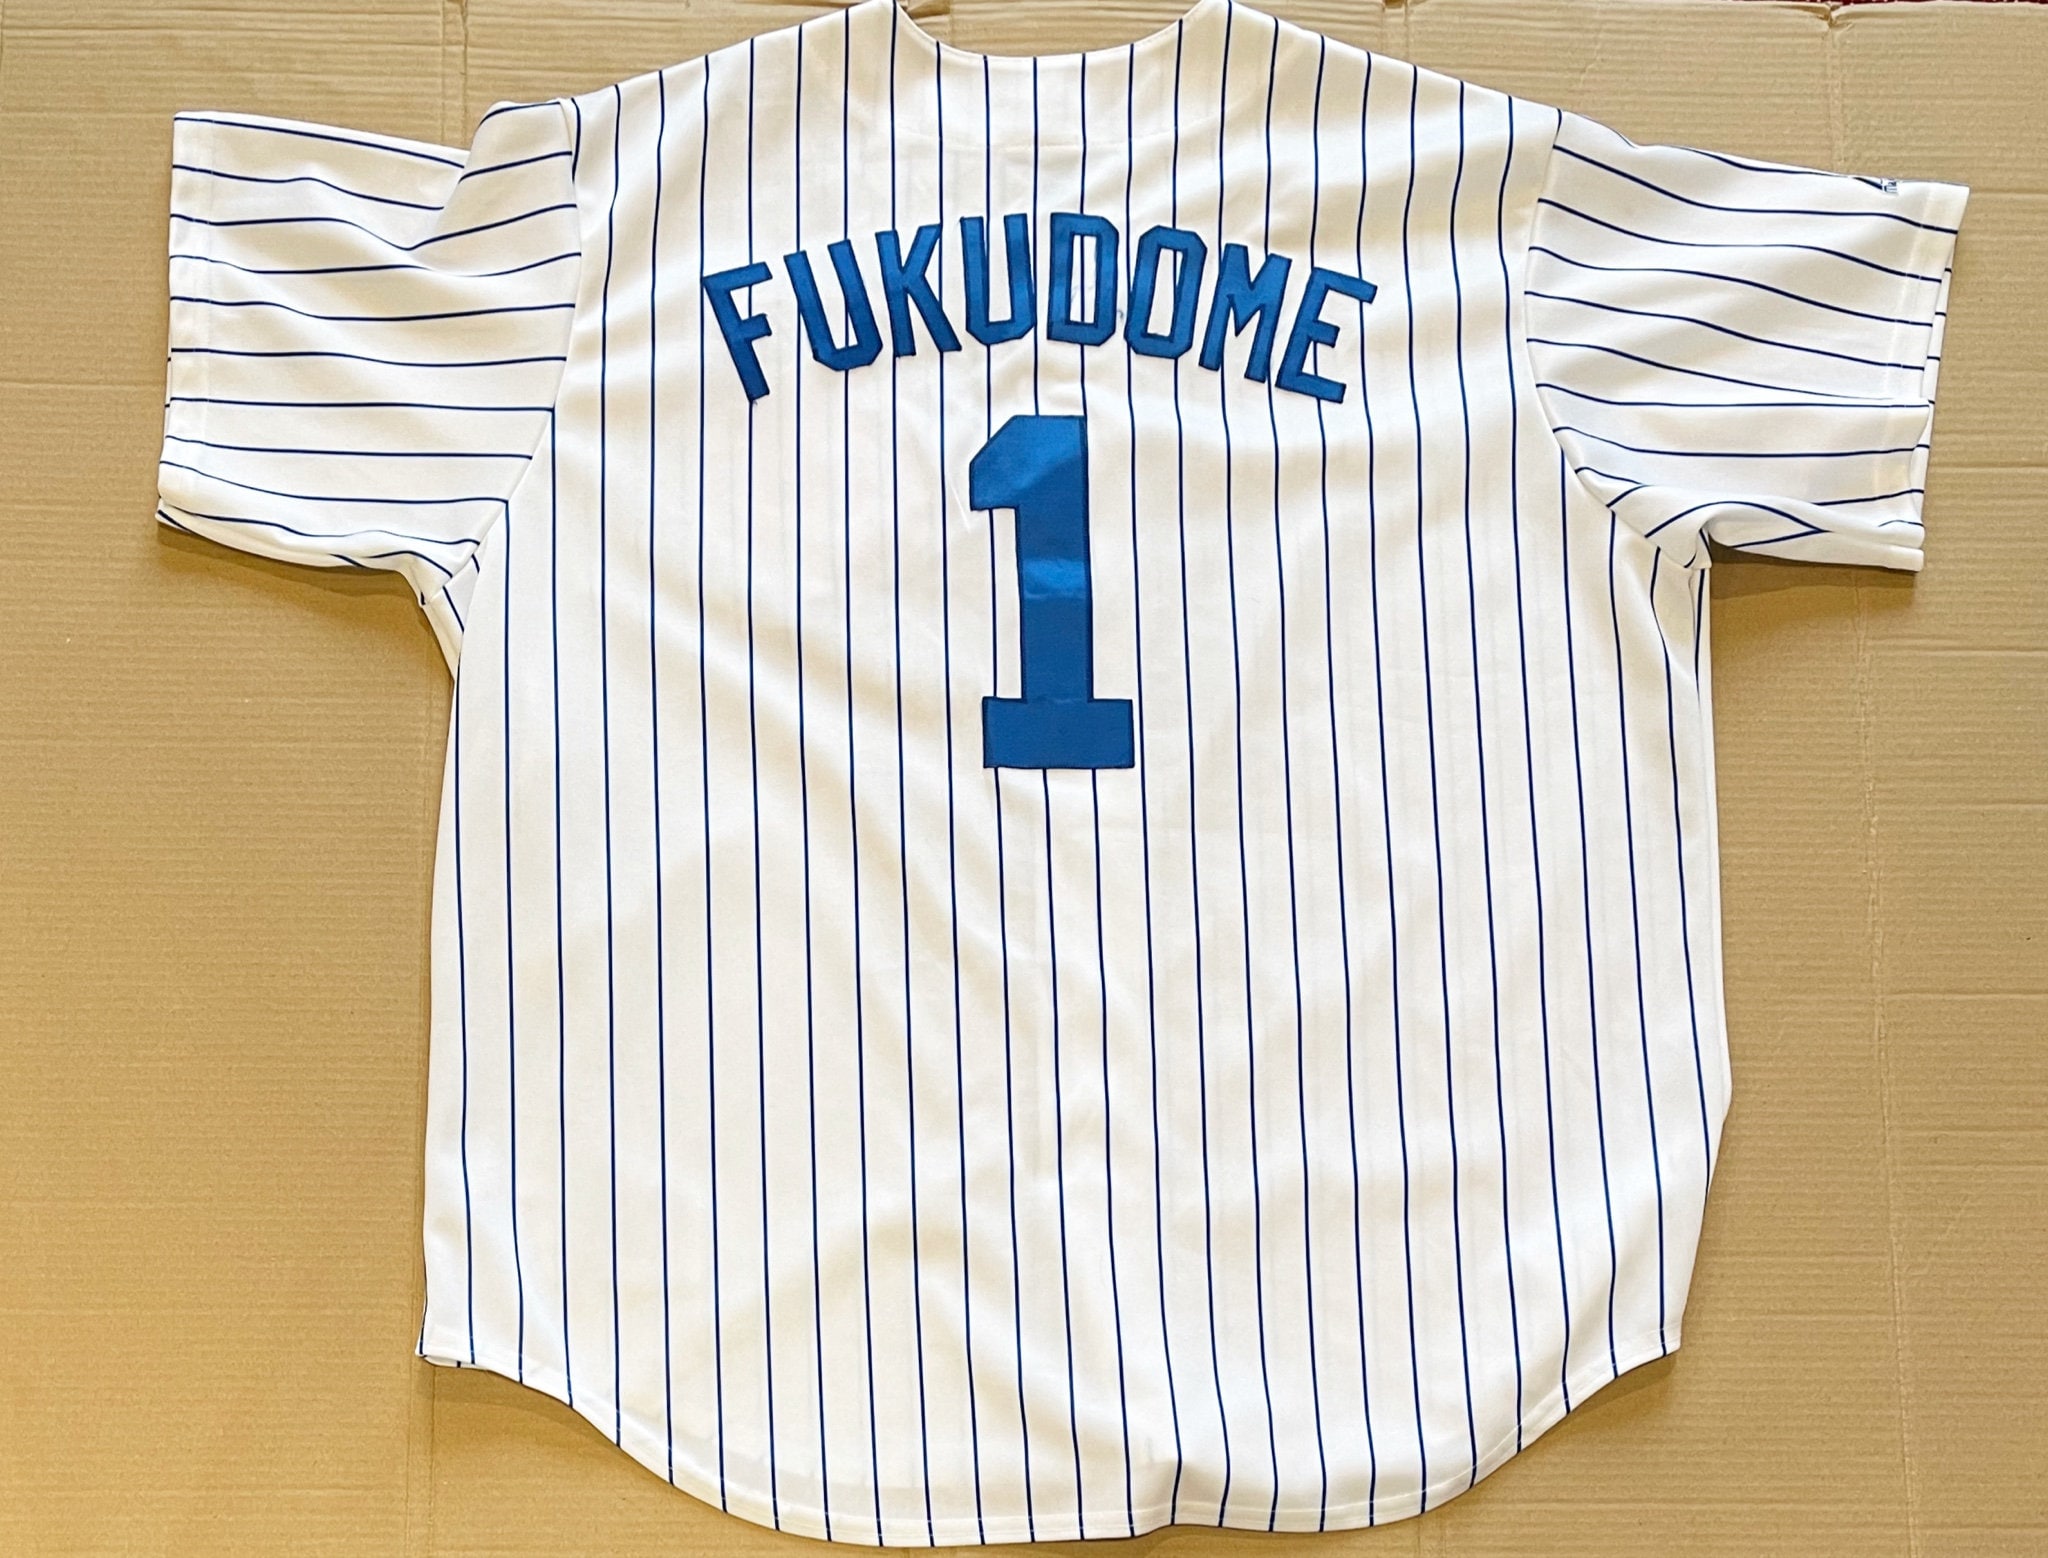 kosuke fukudome t shirt